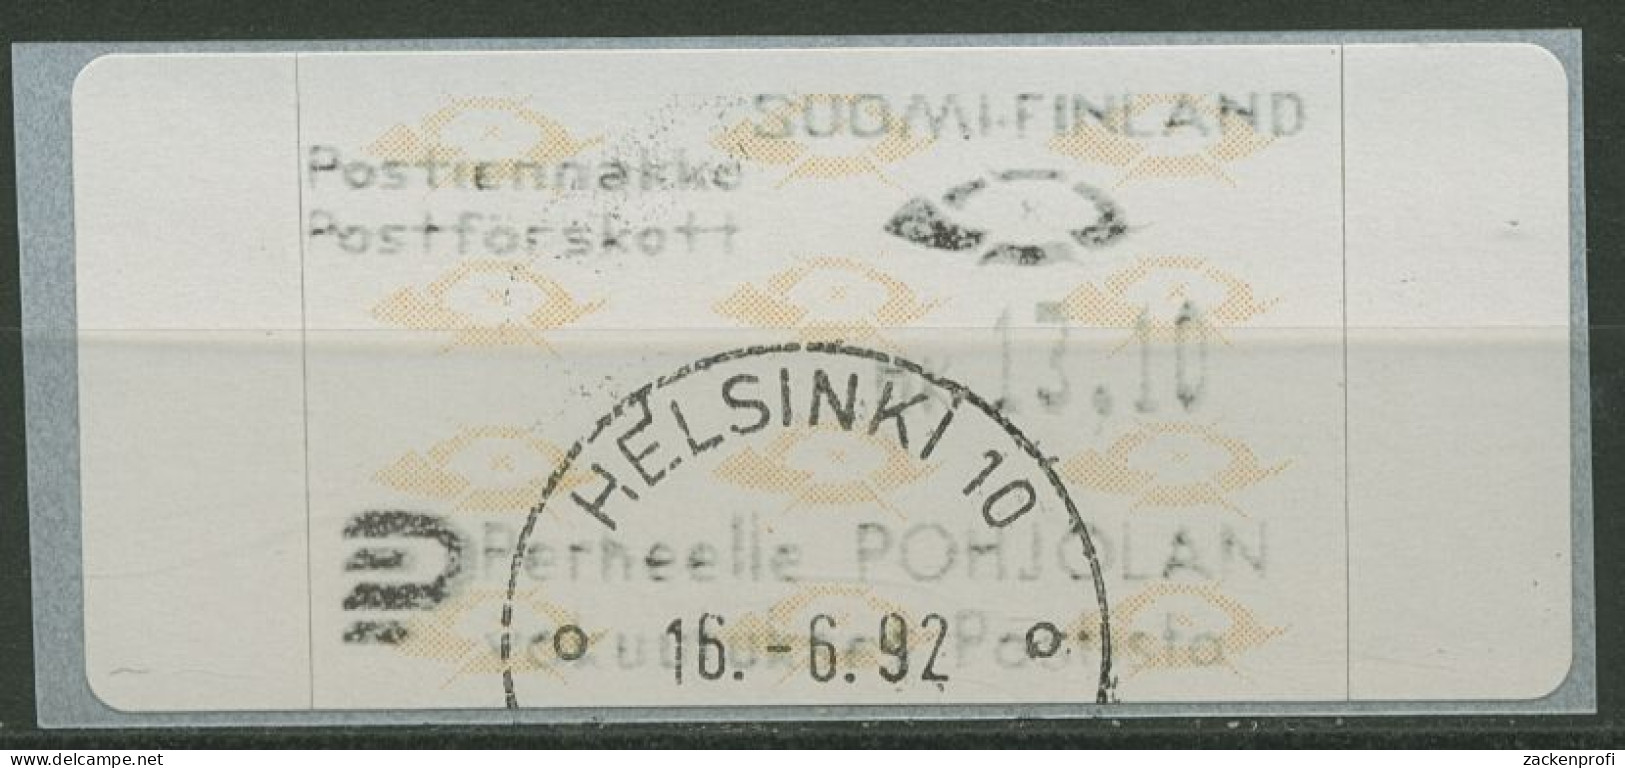 Finnland Automatenmarken 1992 Posthörner Einzelwert ATM 12.3 Z5 Gestempelt - Automatenmarken [ATM]